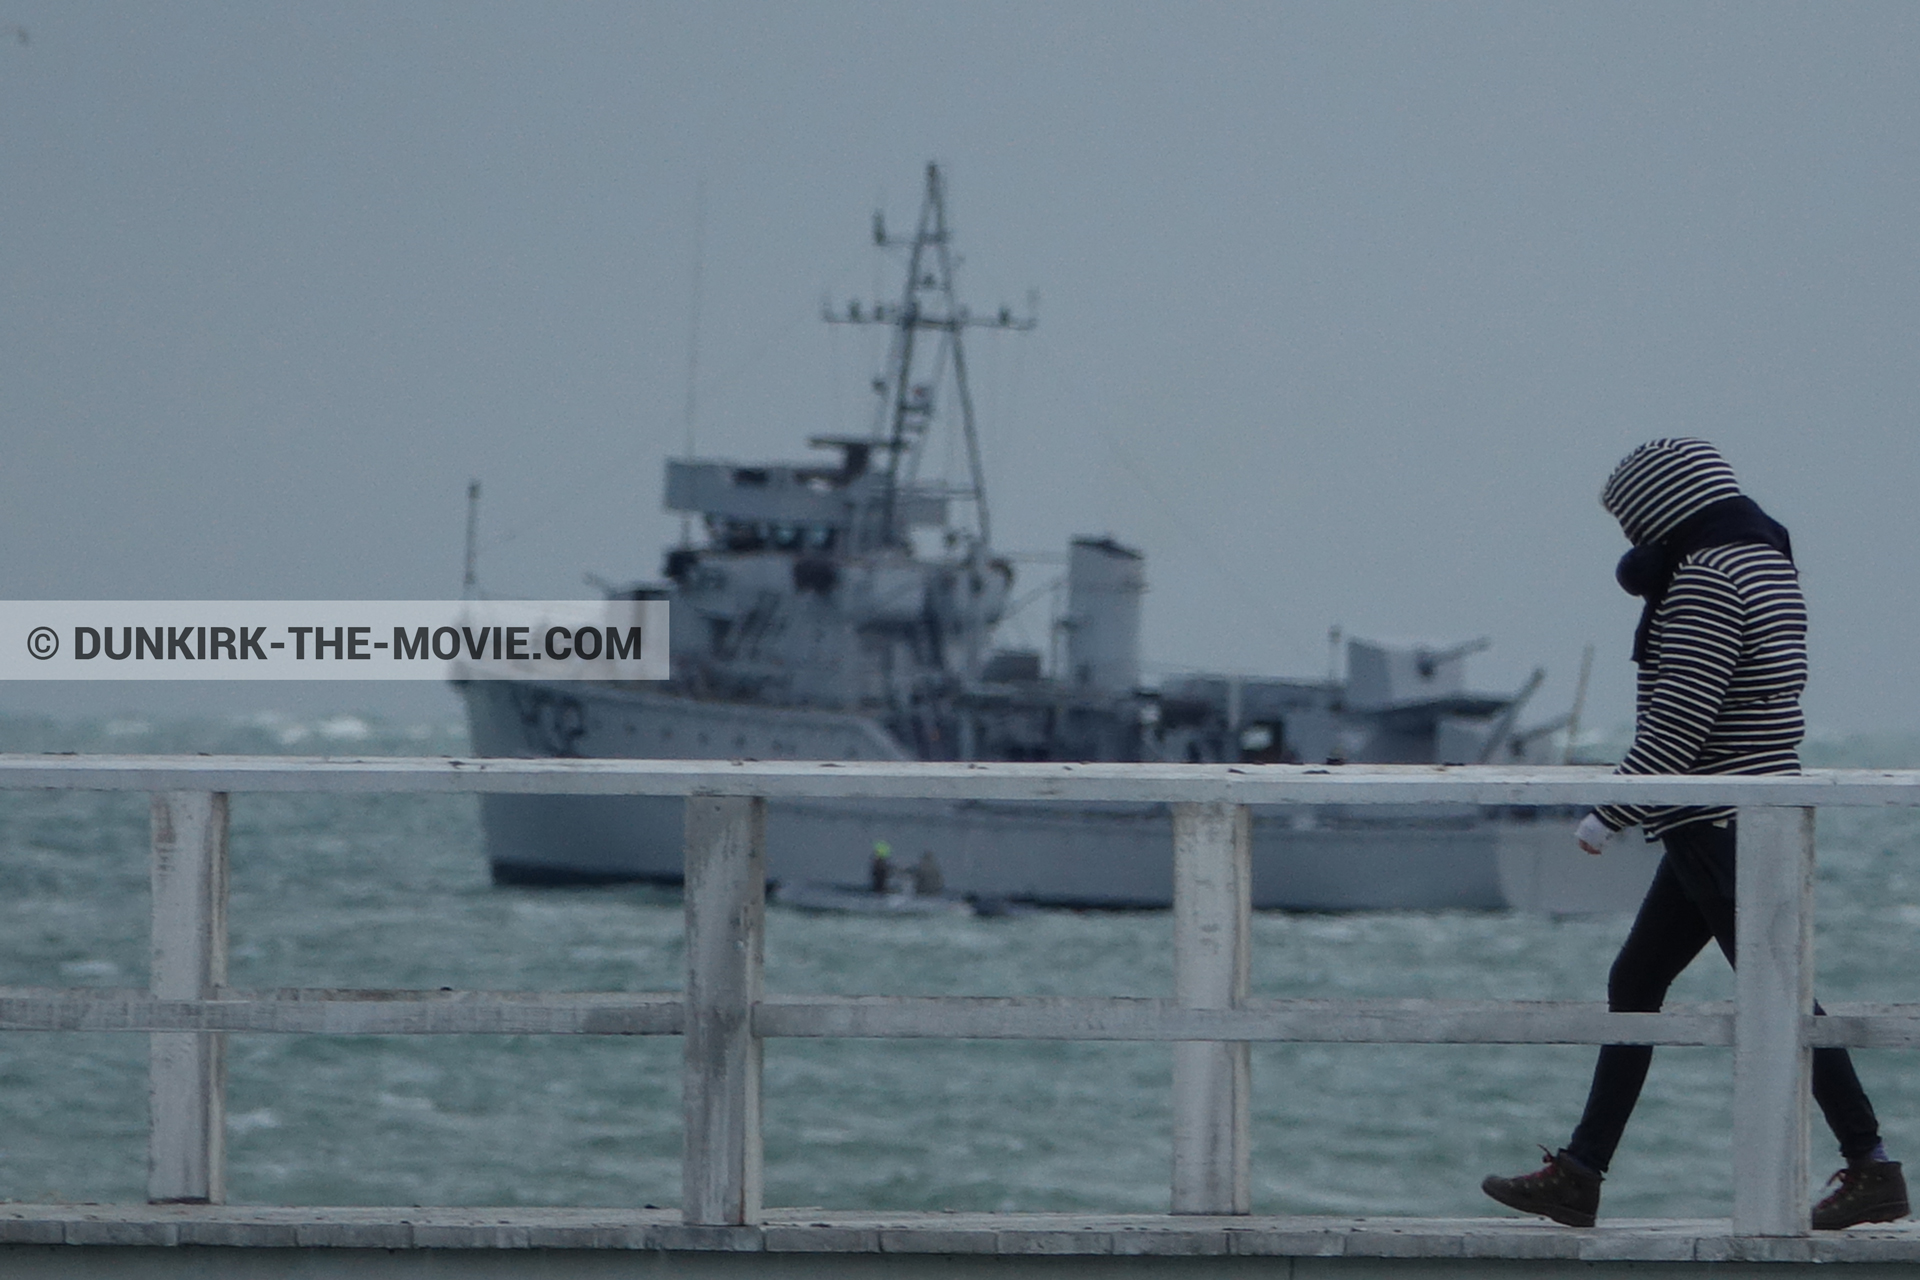 Photo avec bateau, ciel gris, jetée EST,  des dessous du Film Dunkerque de Nolan